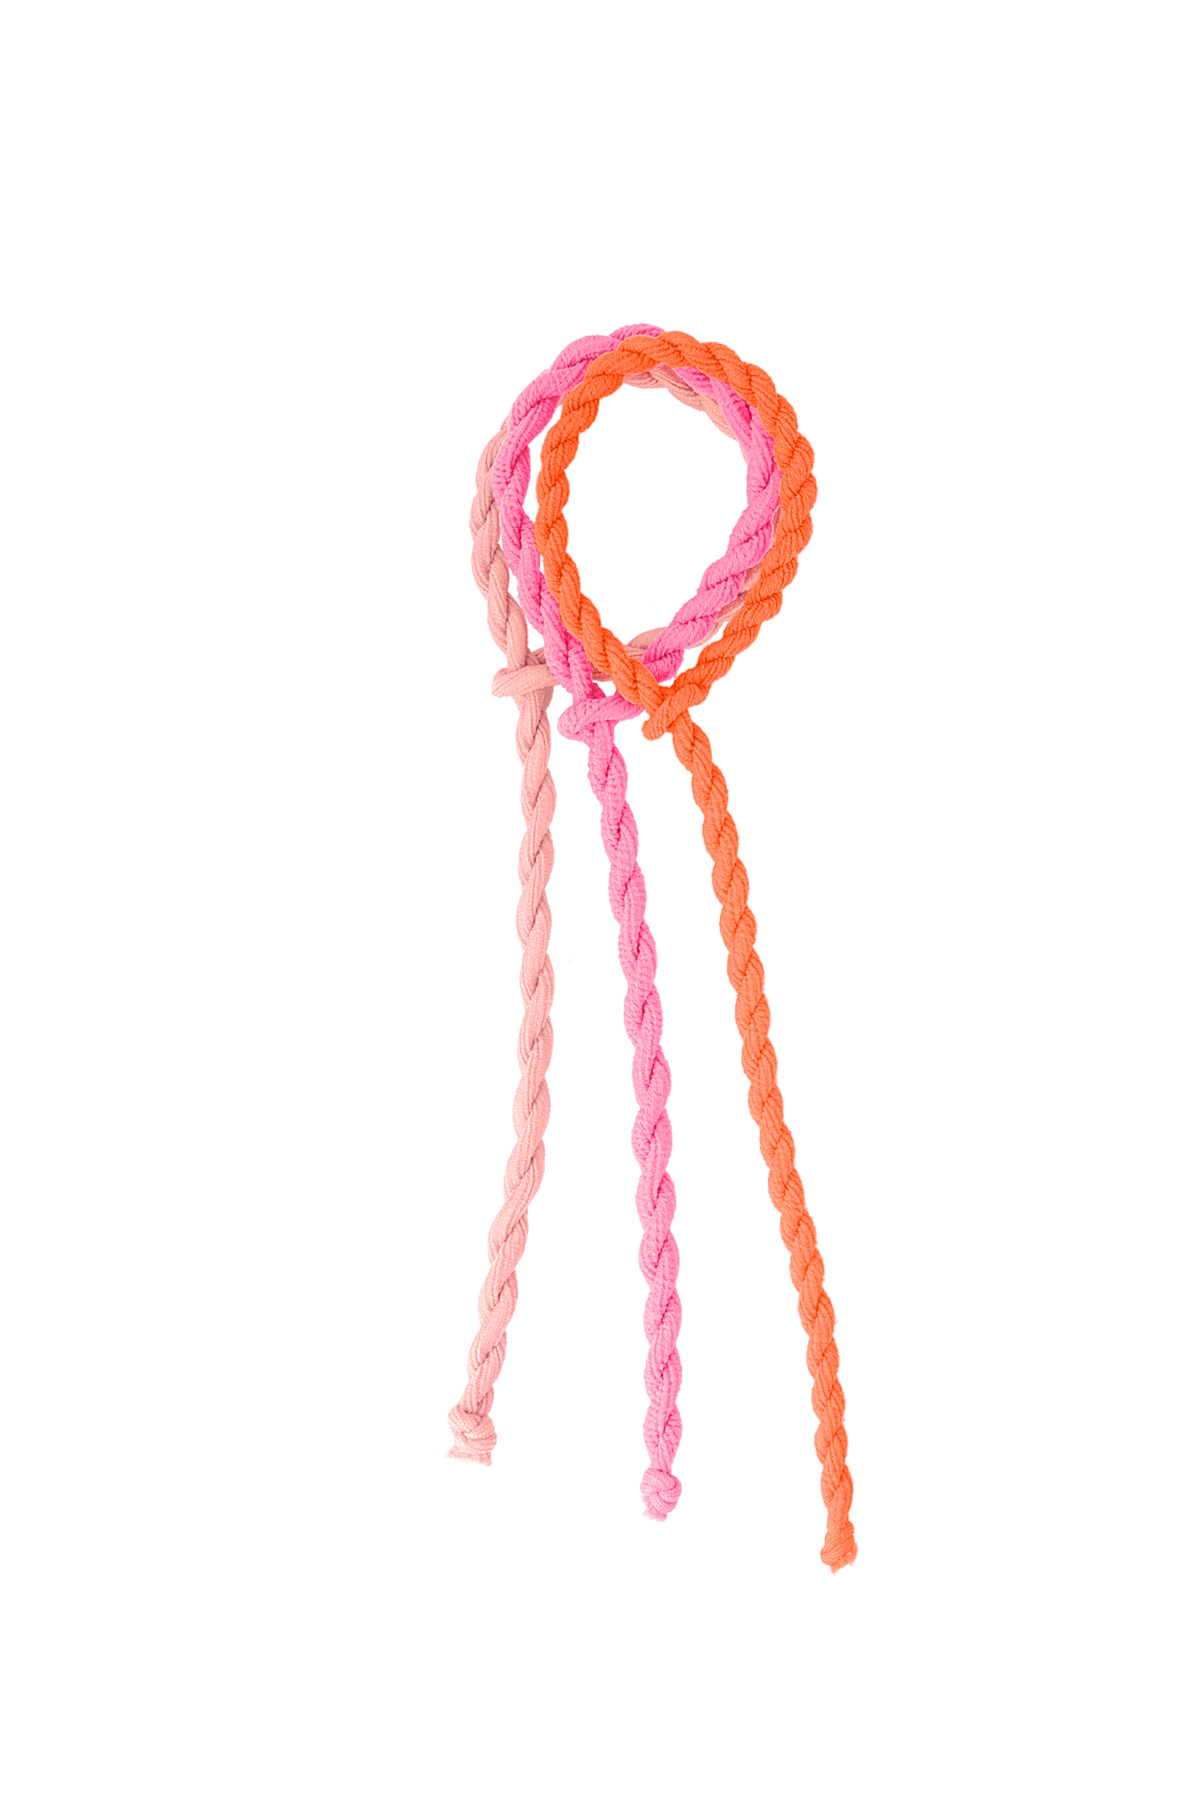 Elastico per capelli attorcigliati - arancione e rosa 